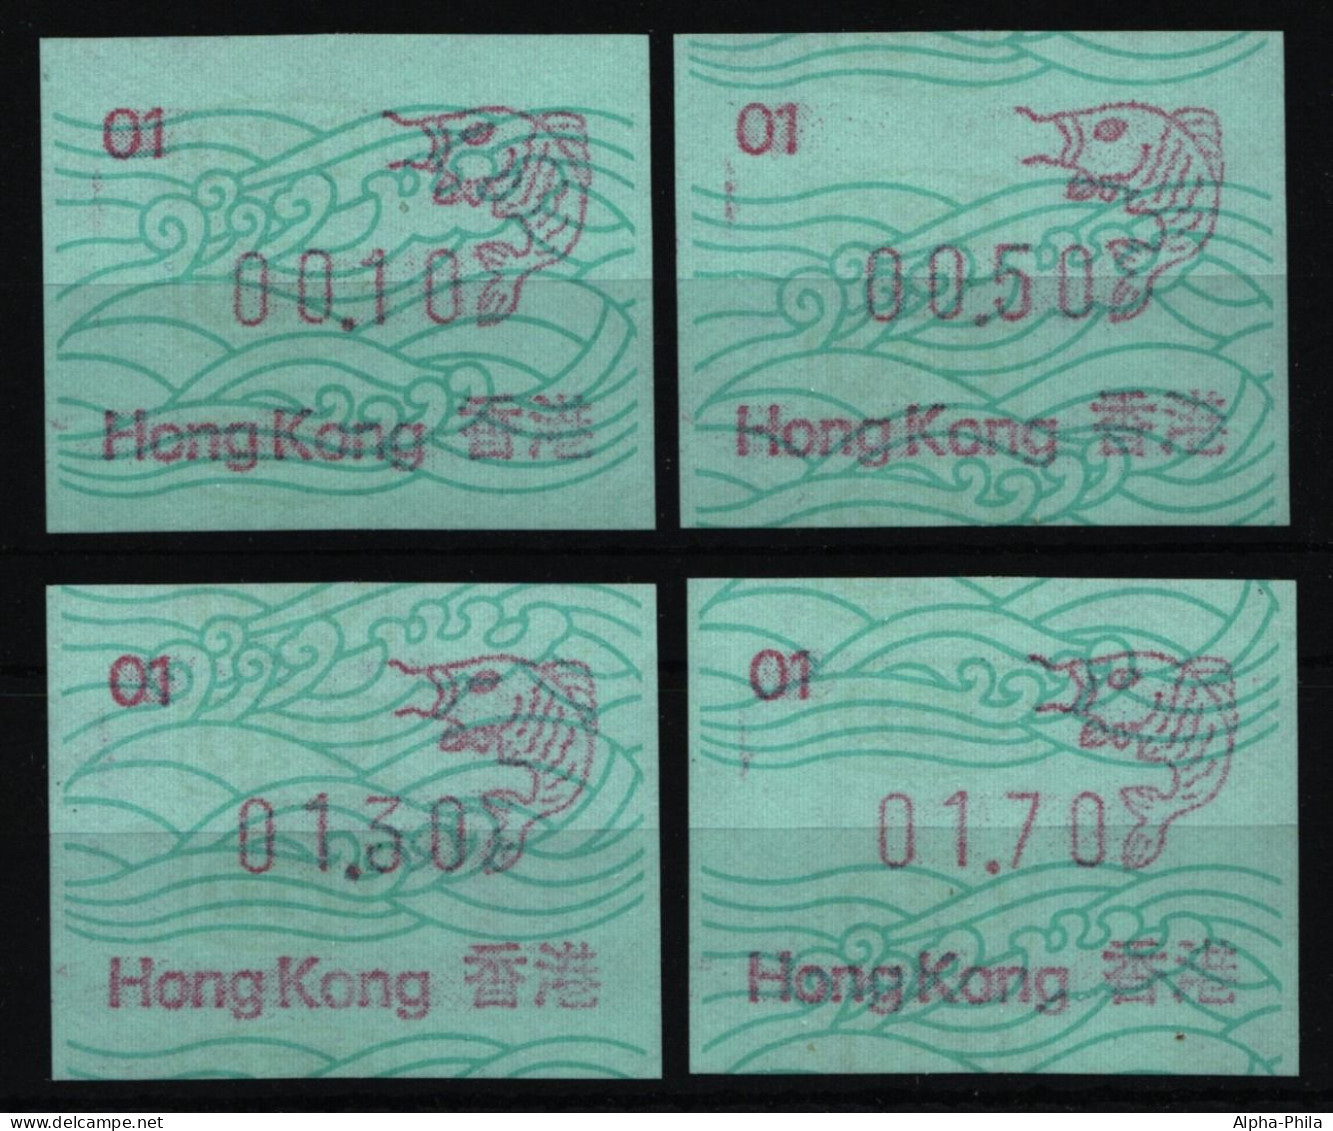 Hongkong 1986 - Mi-Nr. ATM 1 ** - MNH - Automat 01 - 4 Wertstufen - Fisch - Automaten